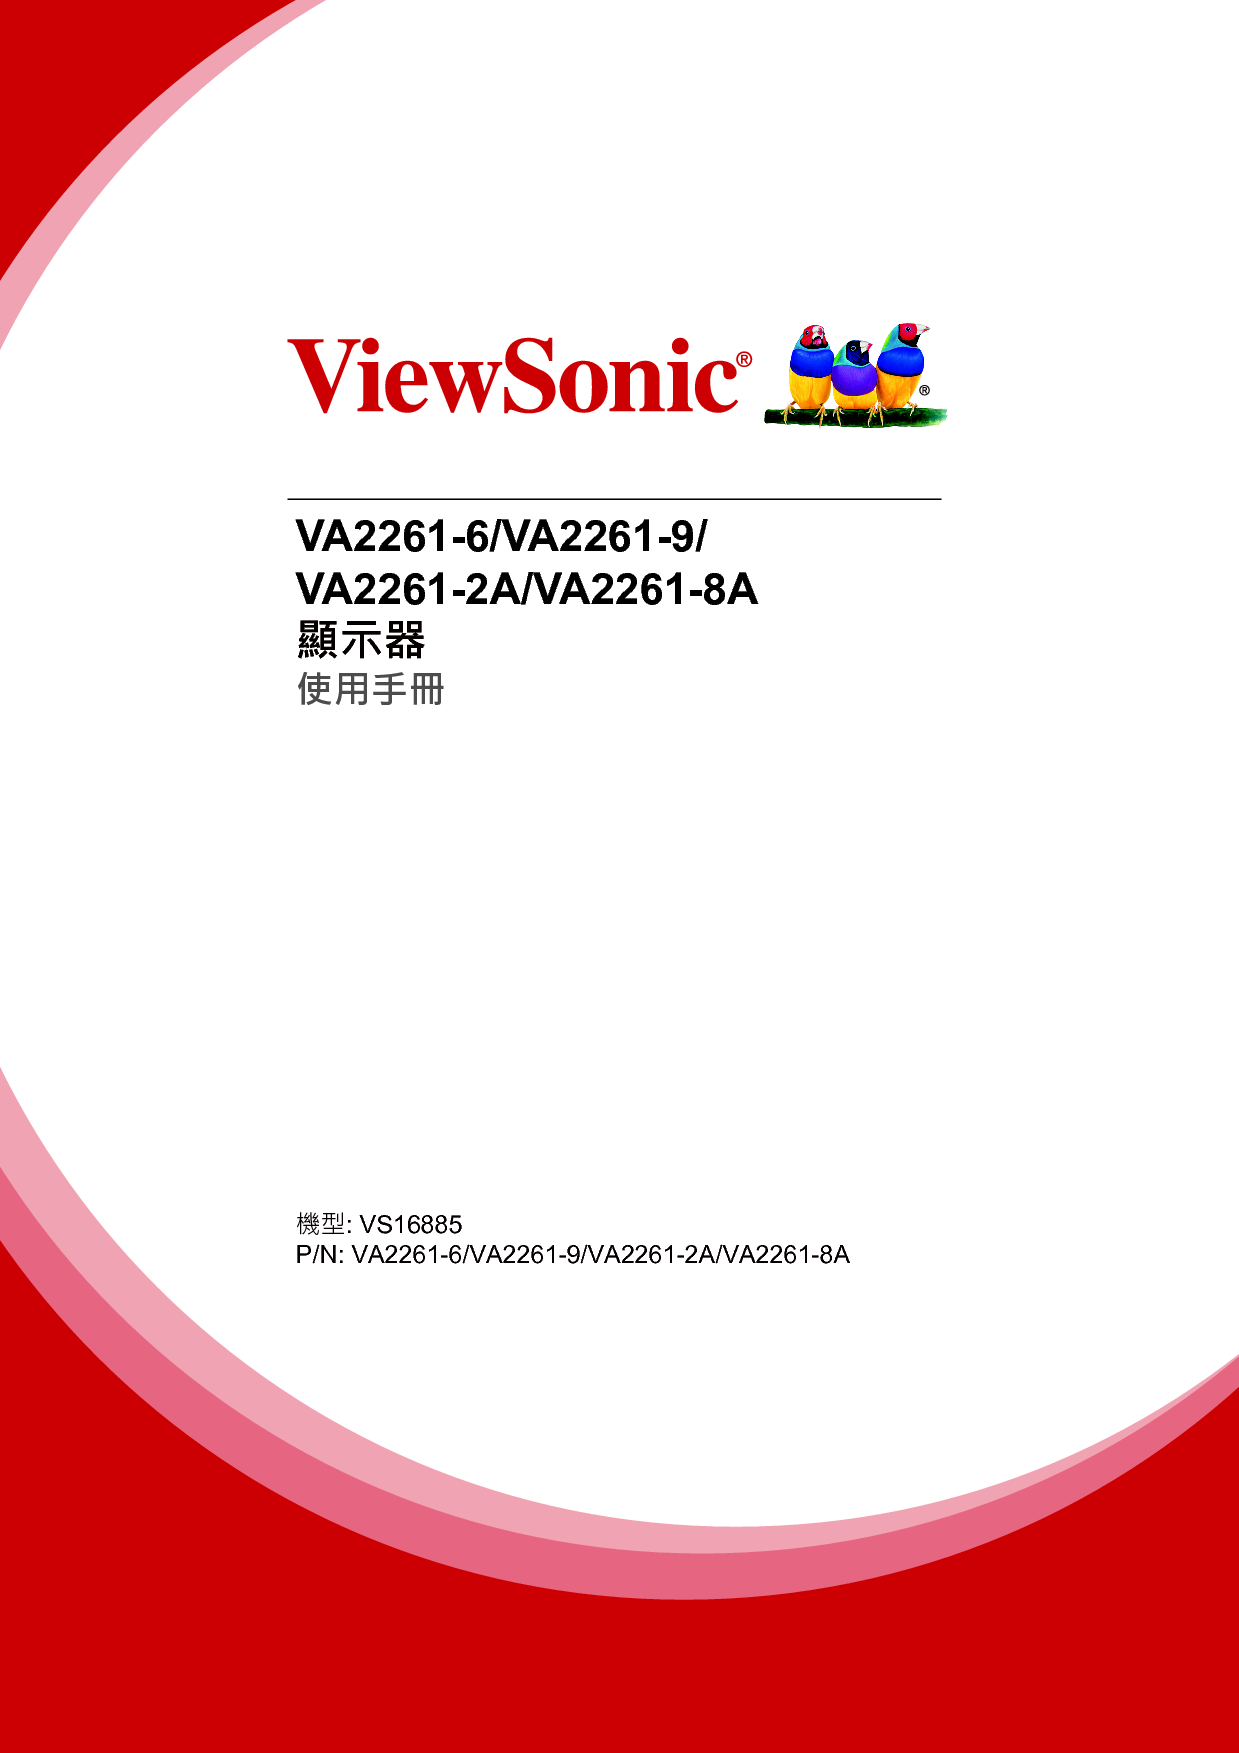 优派 ViewSonic VA2261-6 繁体 使用手册 封面